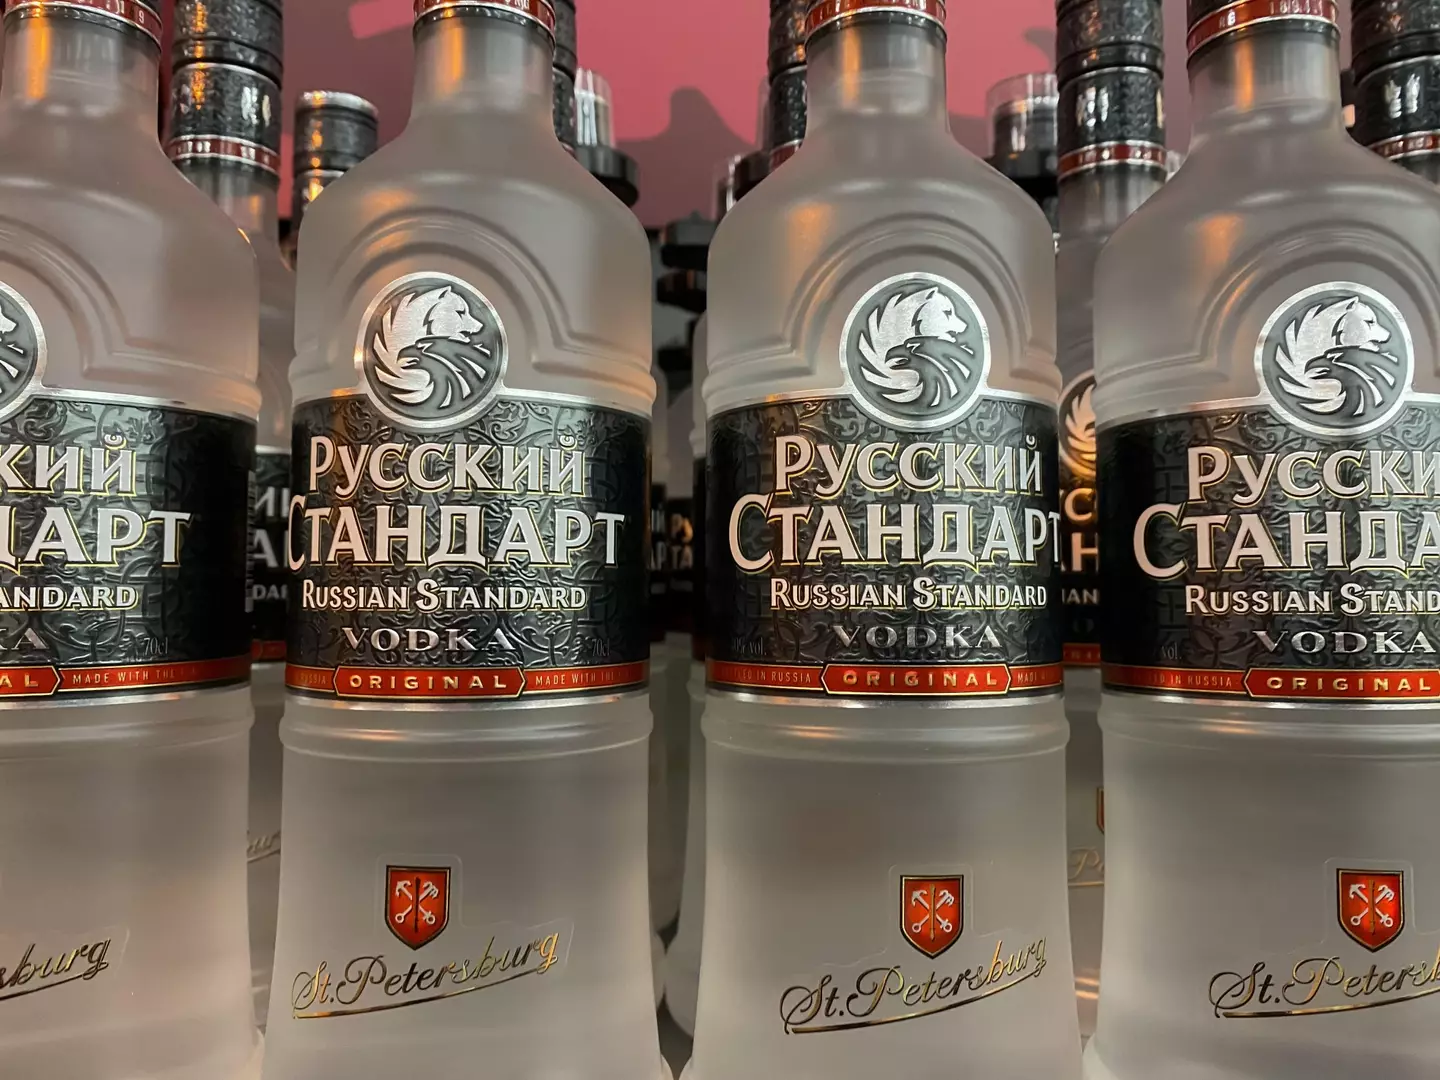 Russian Standard vodka.